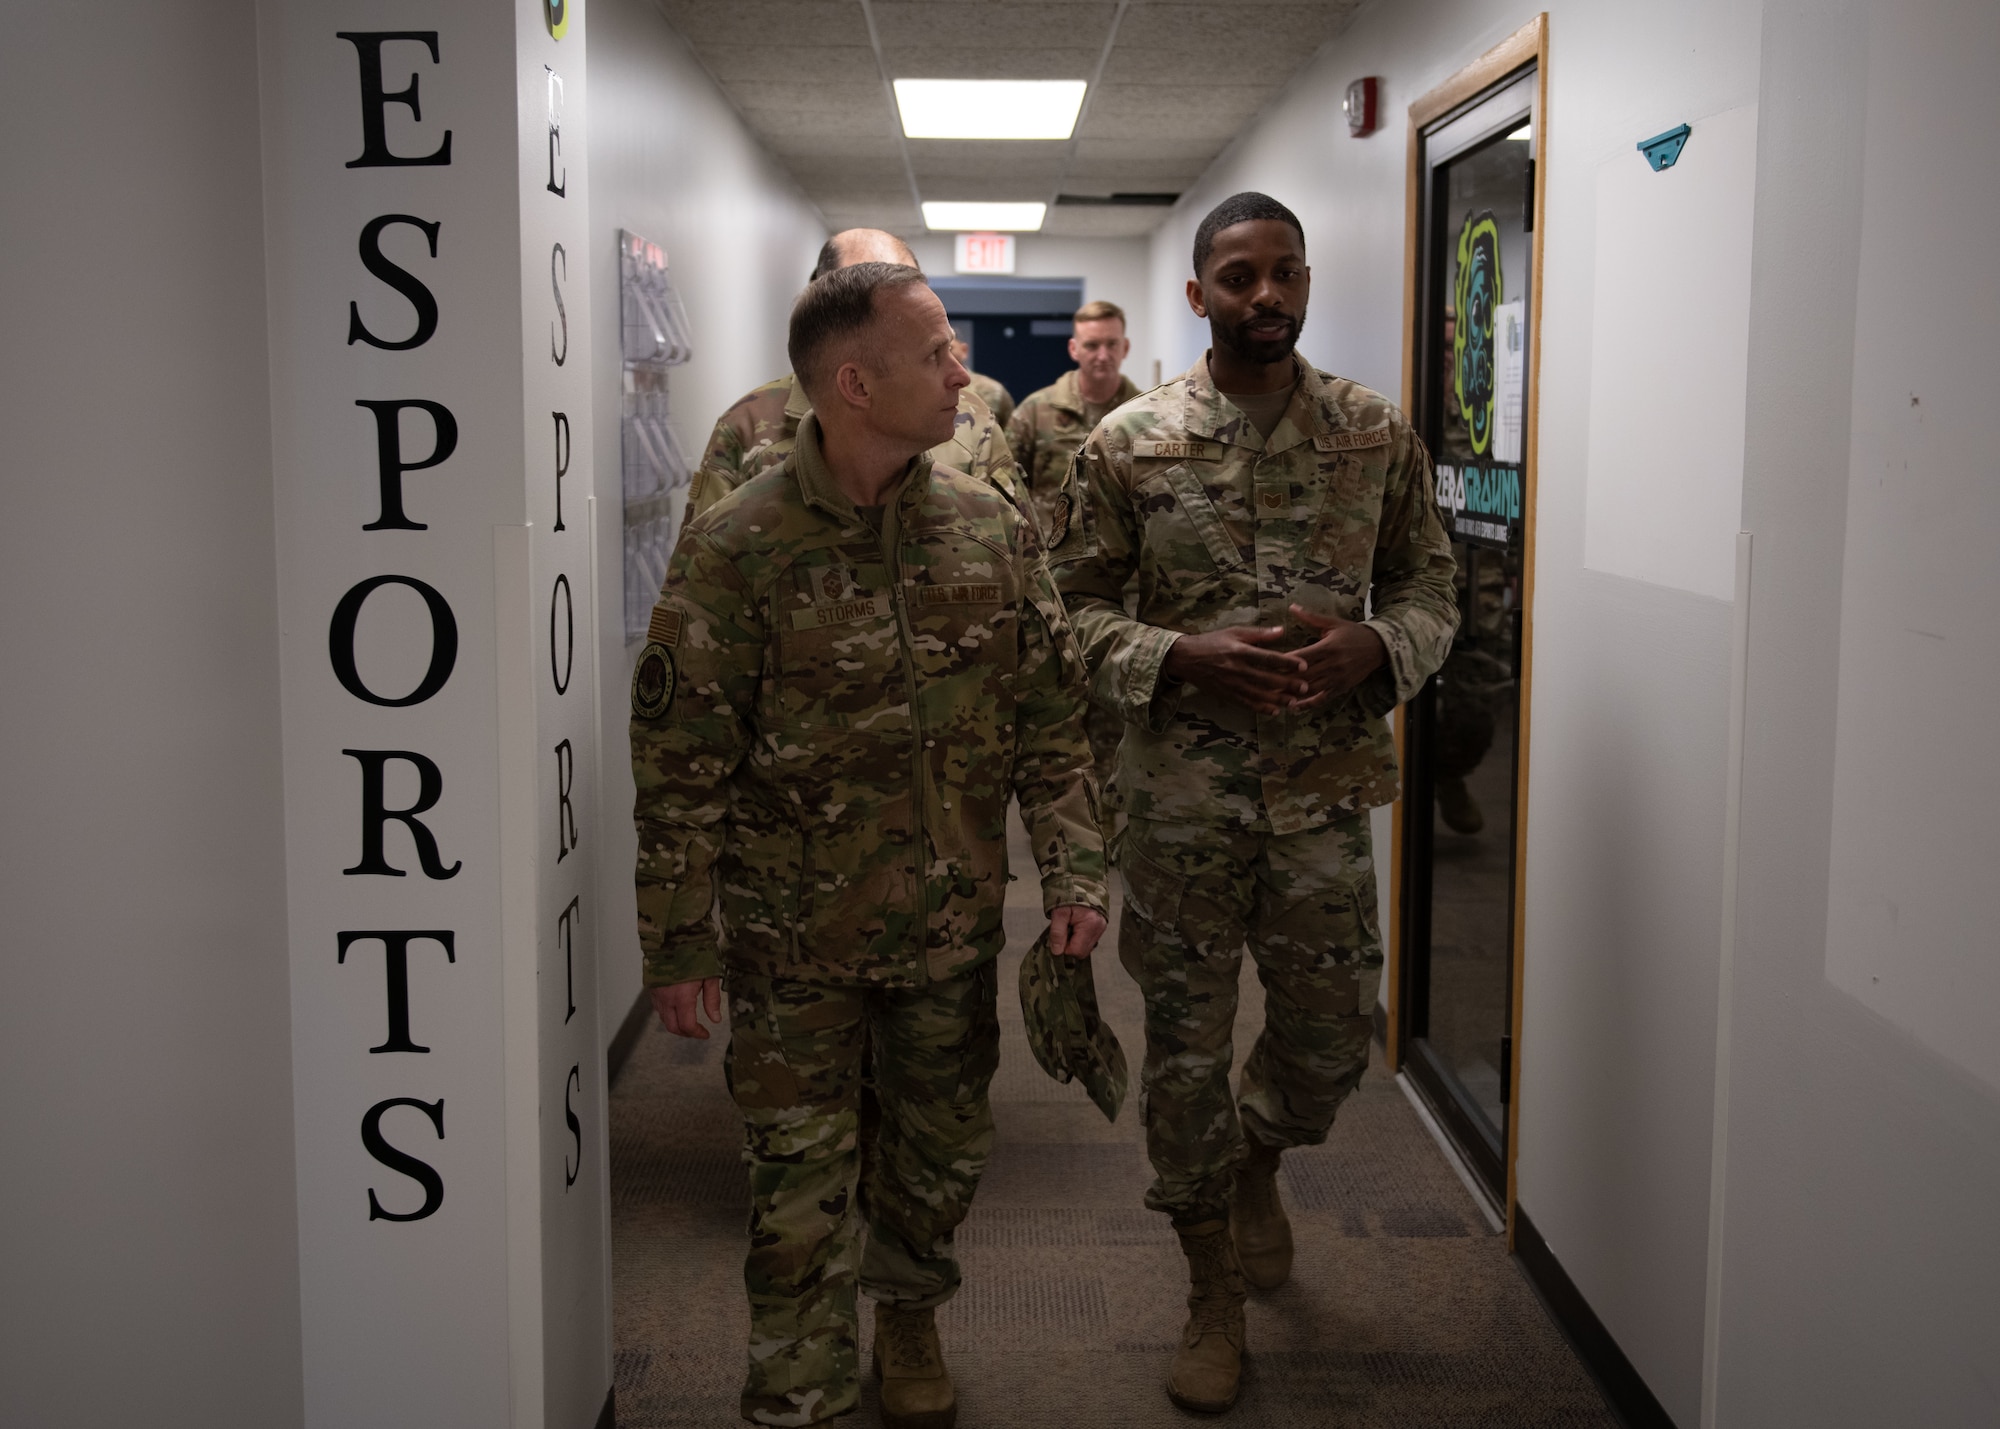 Airmen walk through hallway.